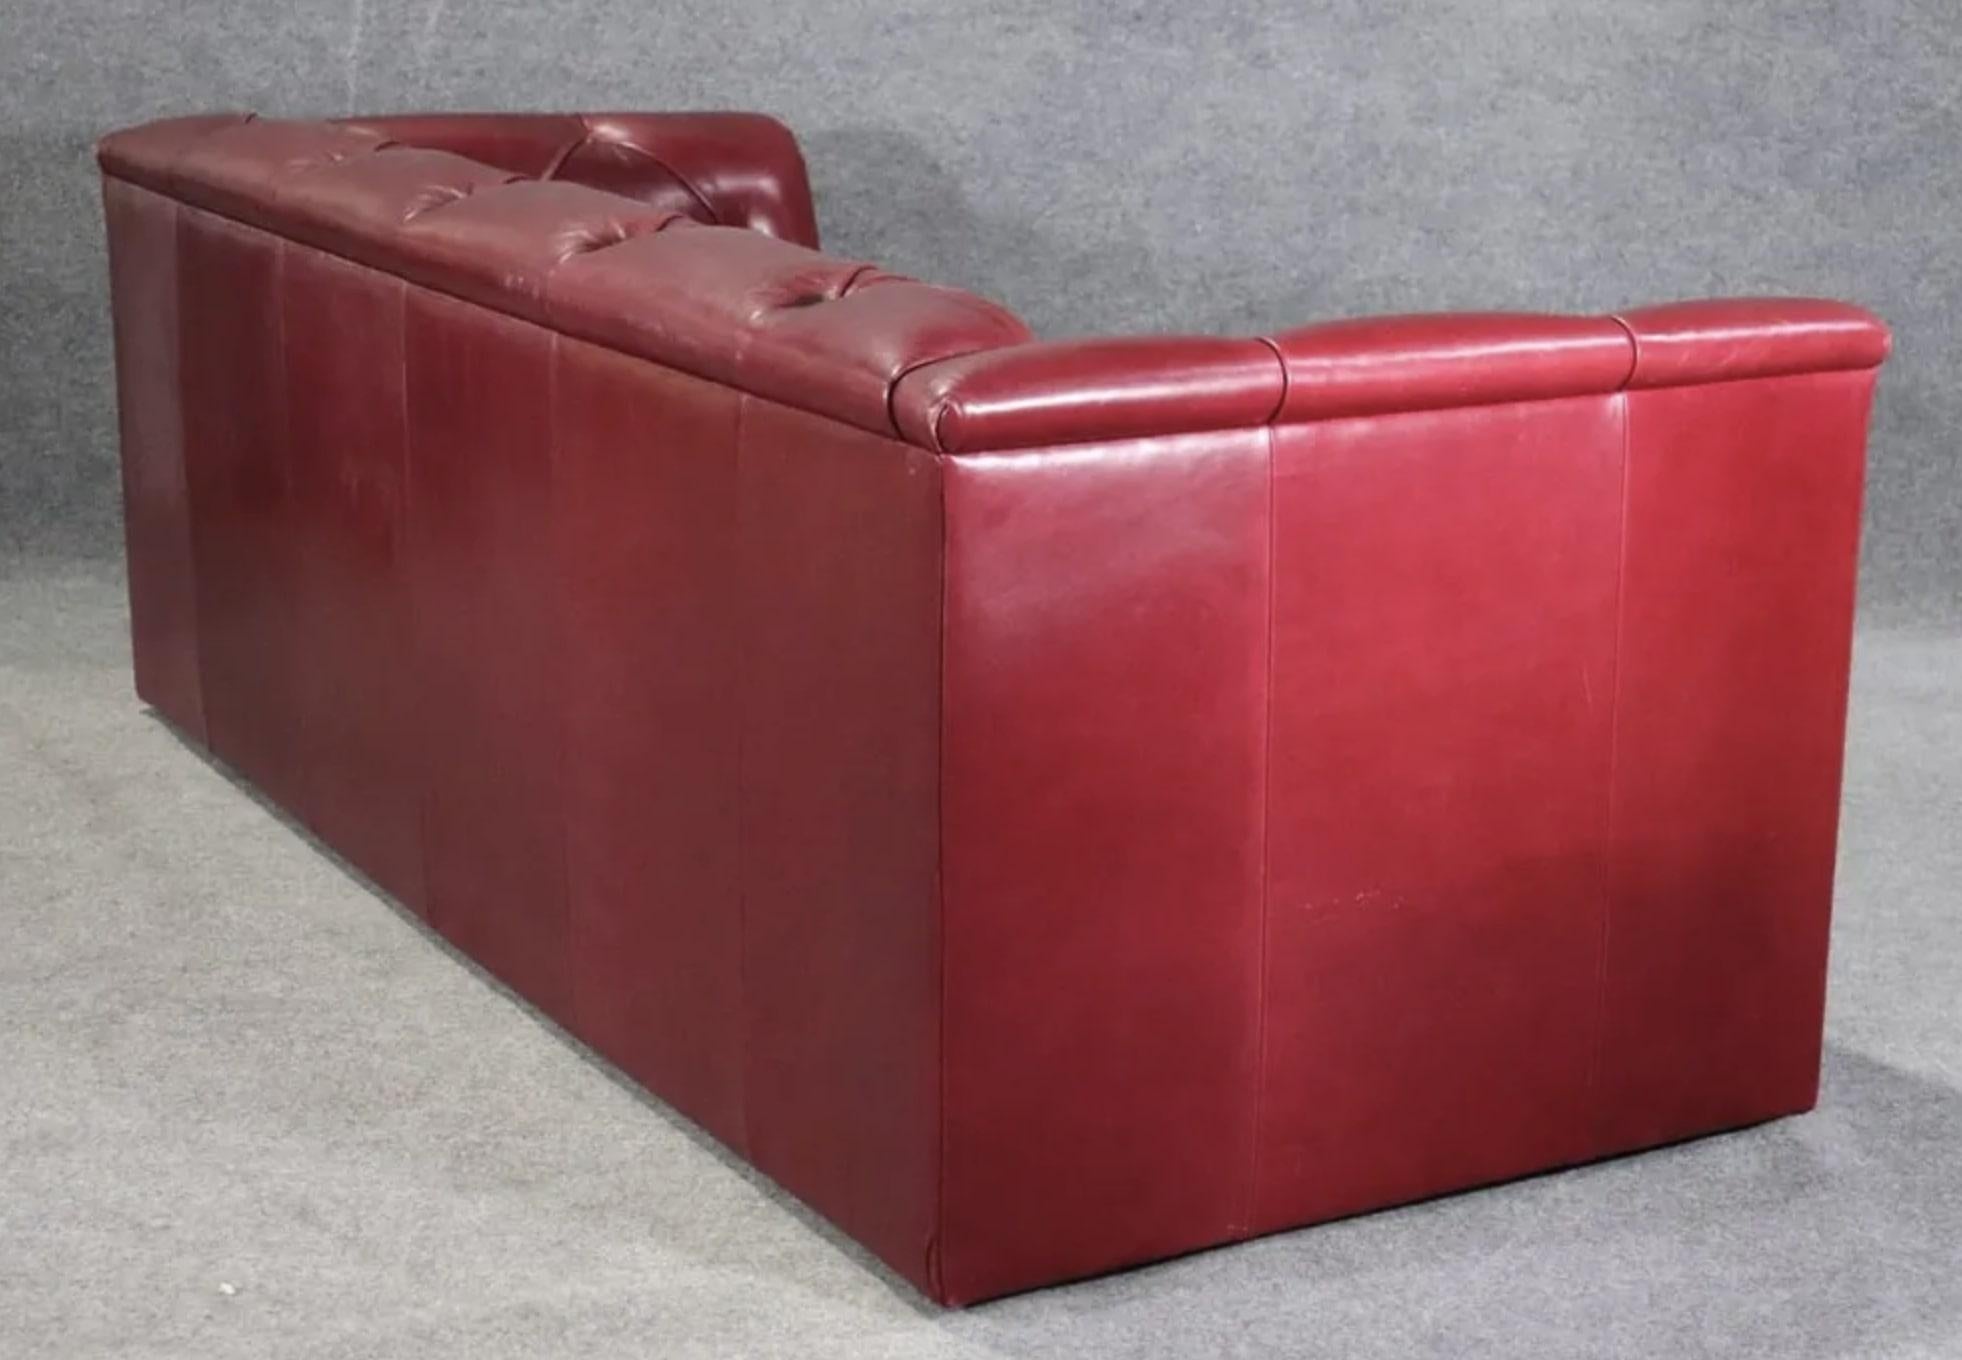 Getuftetes Sofa von J. Robert Scott aus kastanienrotem Leder. Die Sitzfläche geht bis zum Boden, um ein niedriges Profil zu erhalten.
Bitte bestätigen Sie den Standort NY oder NJ